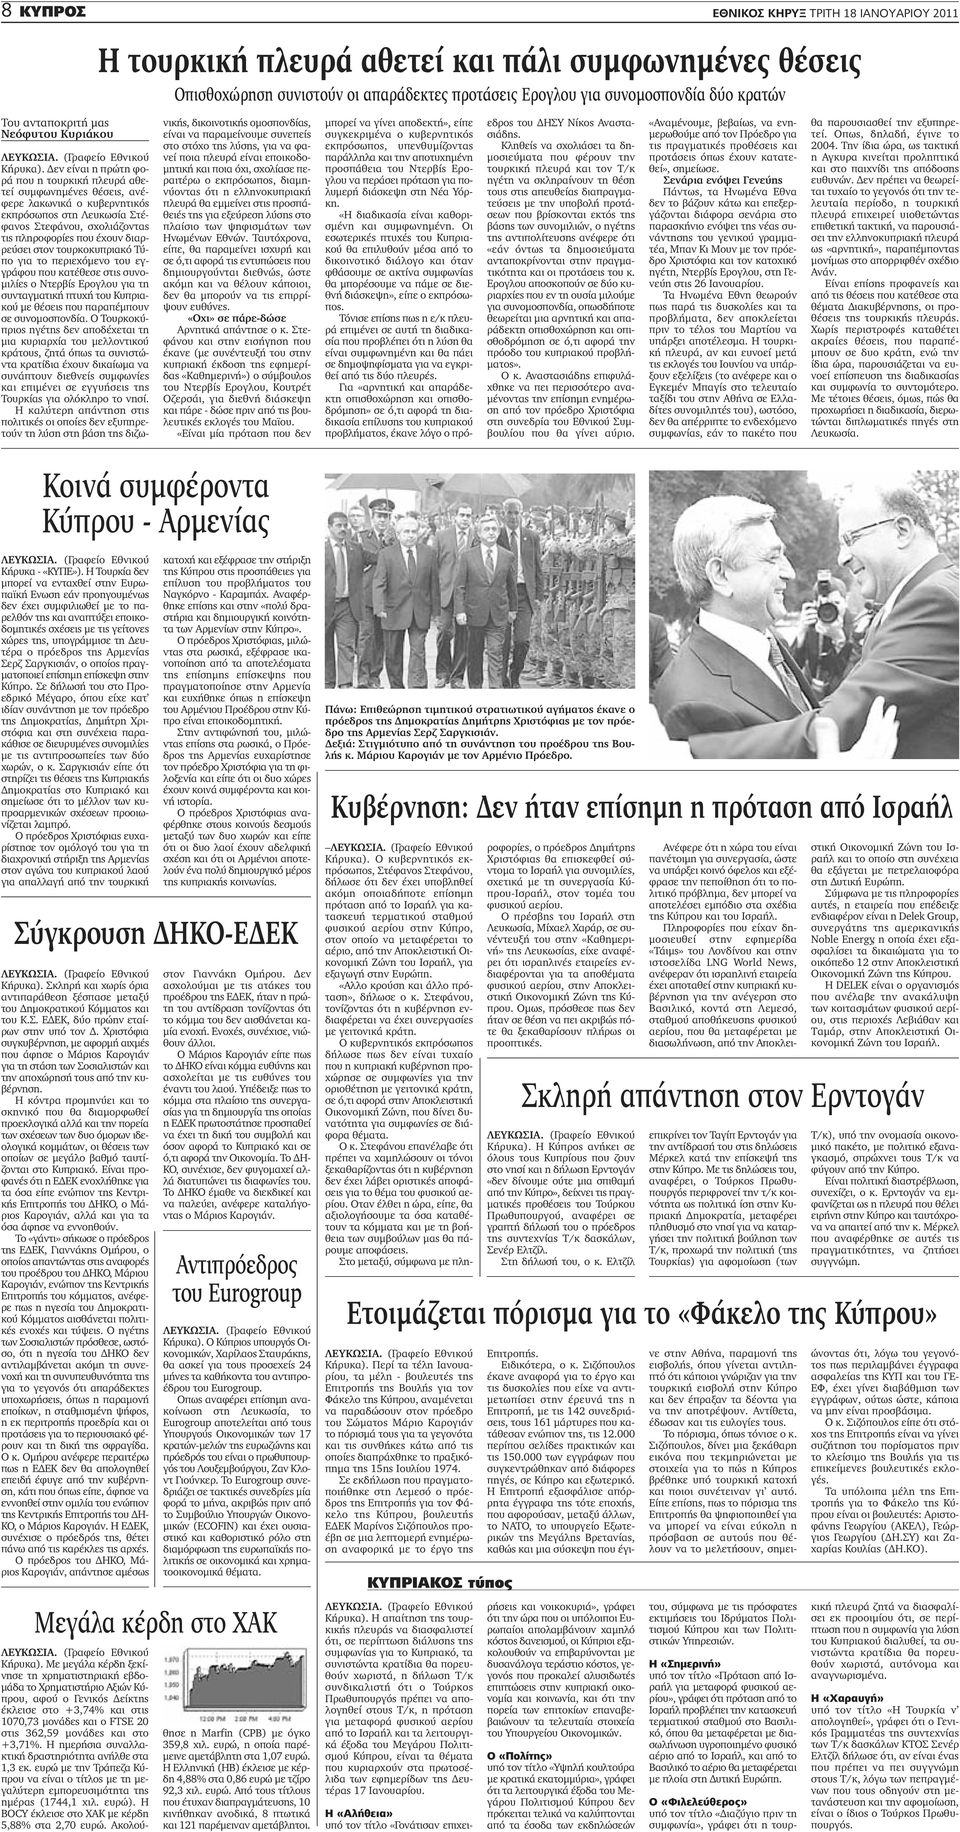 Δεν είναι η πρώτη φορά που η τουρκική πλευρά αθετεί συμφωνημένες θέσεις, ανέφερε λακωνικά ο κυβερνητικός εκπρόσωπος στη Λευκωσία Στέφανος Στεφάνου, σχολιάζοντας τις πληροφορίες που έχουν διαρρεύσει